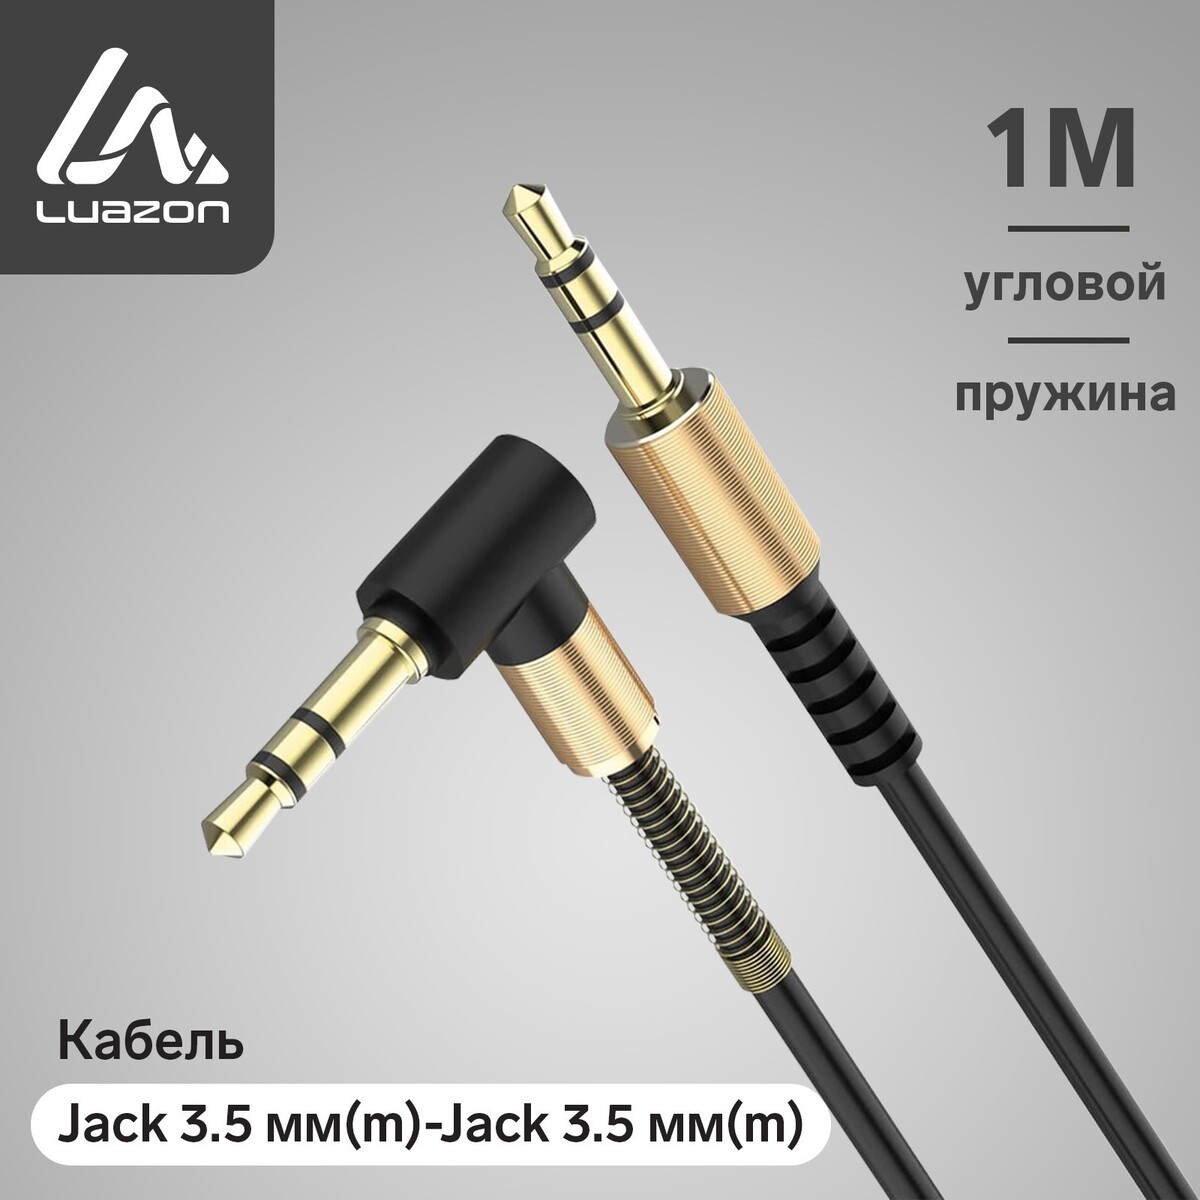   aux luazon, jack 3.5 (m)-jack 3.5 (m), ,  , 1 , 